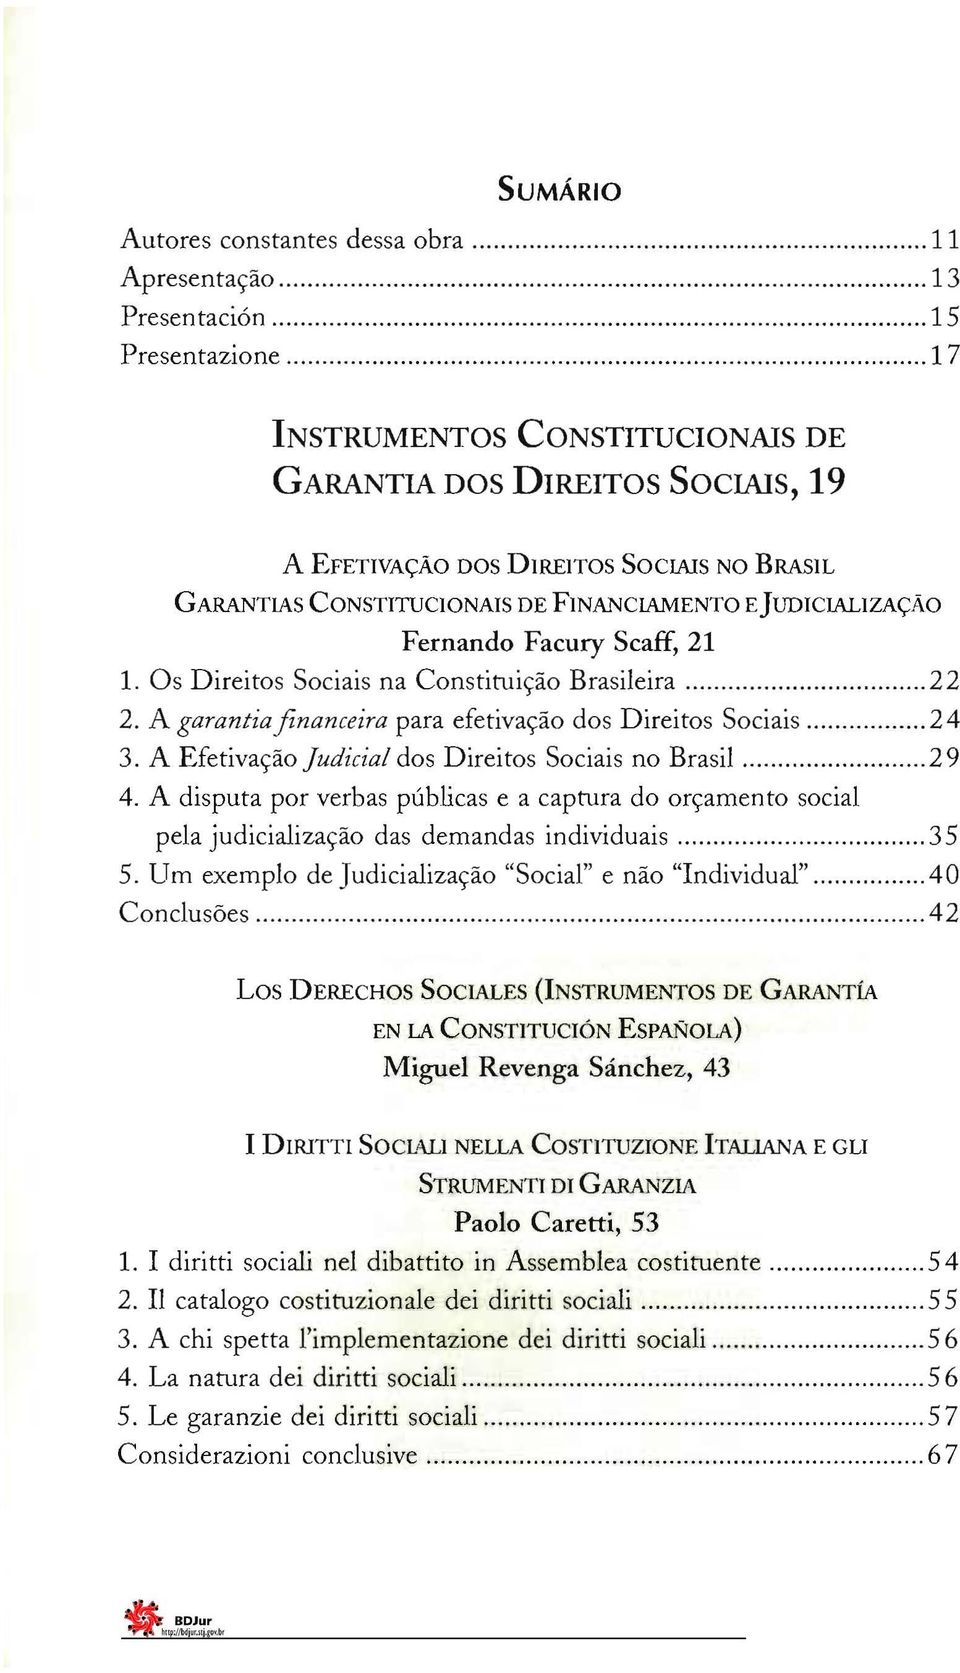 A garantiafinanceira para efetivação dos Direitos Sociais 24 3. A Efetivação Judicial dos Direitos Sociais no Brasil 29 4.